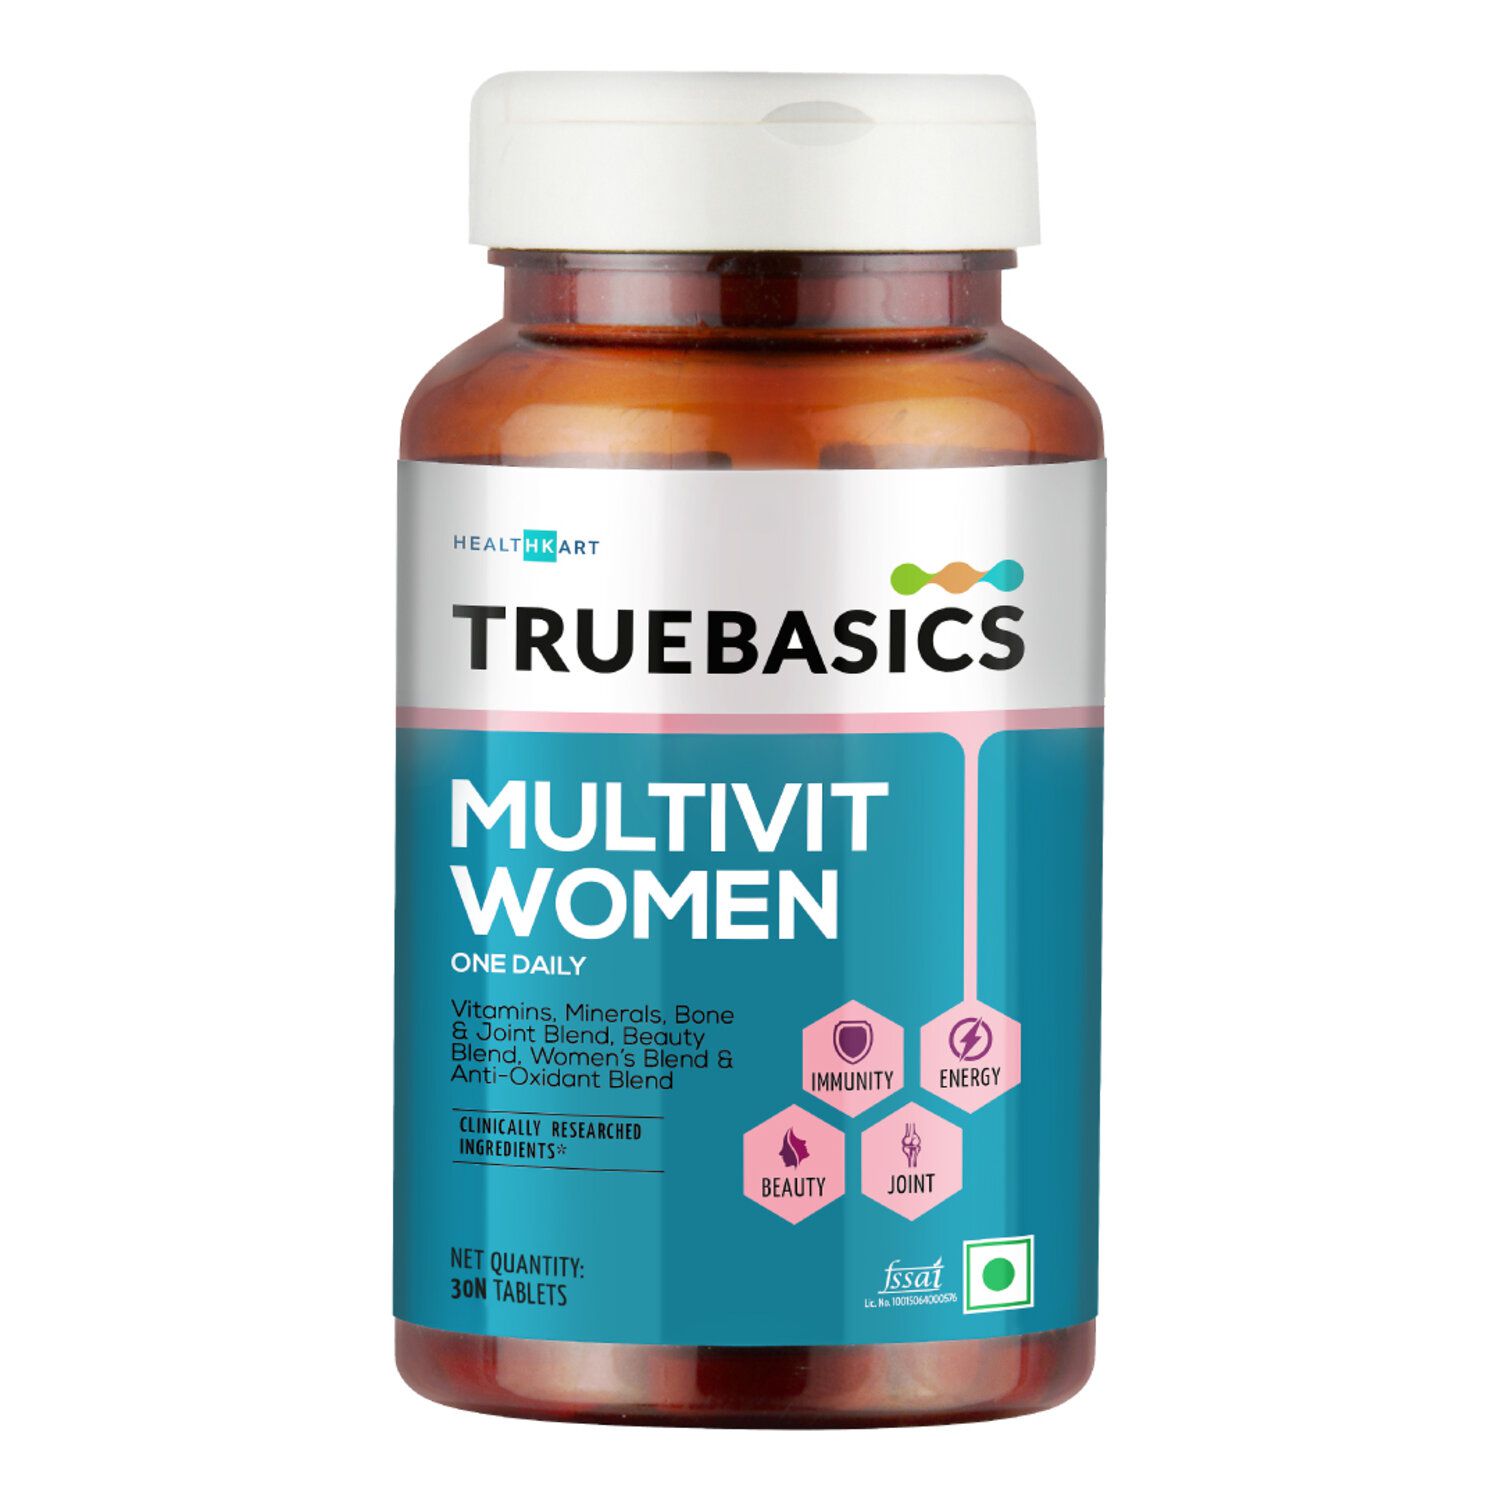 truebasics - Multivitamins for Men & Women (Pack of 1)